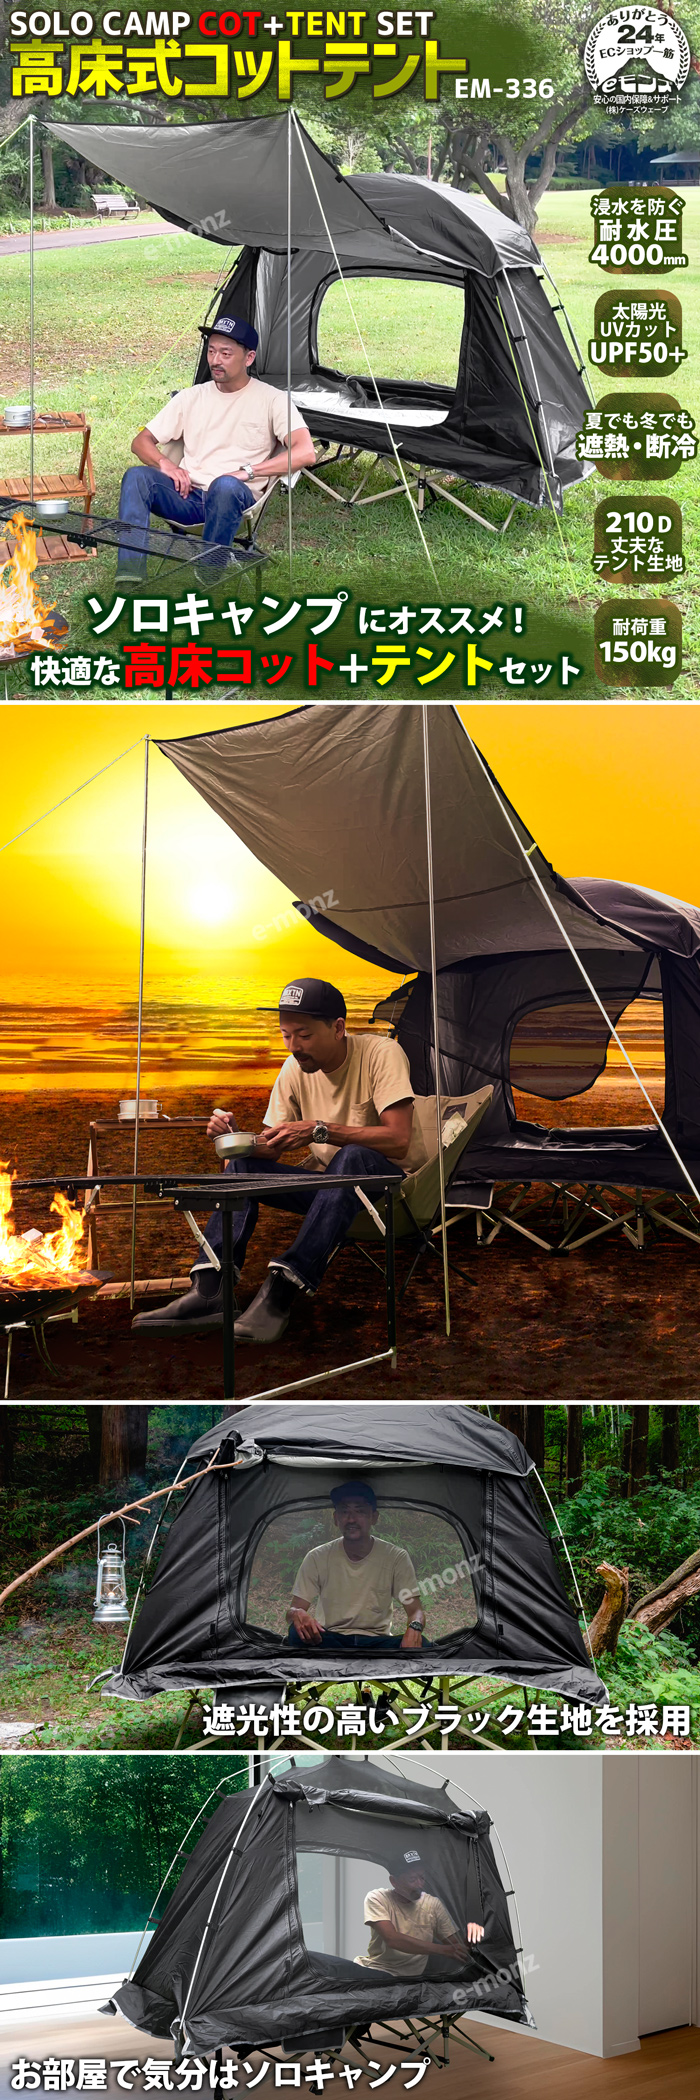 コットテント 高床式テント 1人用 折り畳み 防水 軽量 コンパクト テントコット【EM-336】キャンプテント ベッドテント ソロキャンプ  ツーリングテント おすすめ